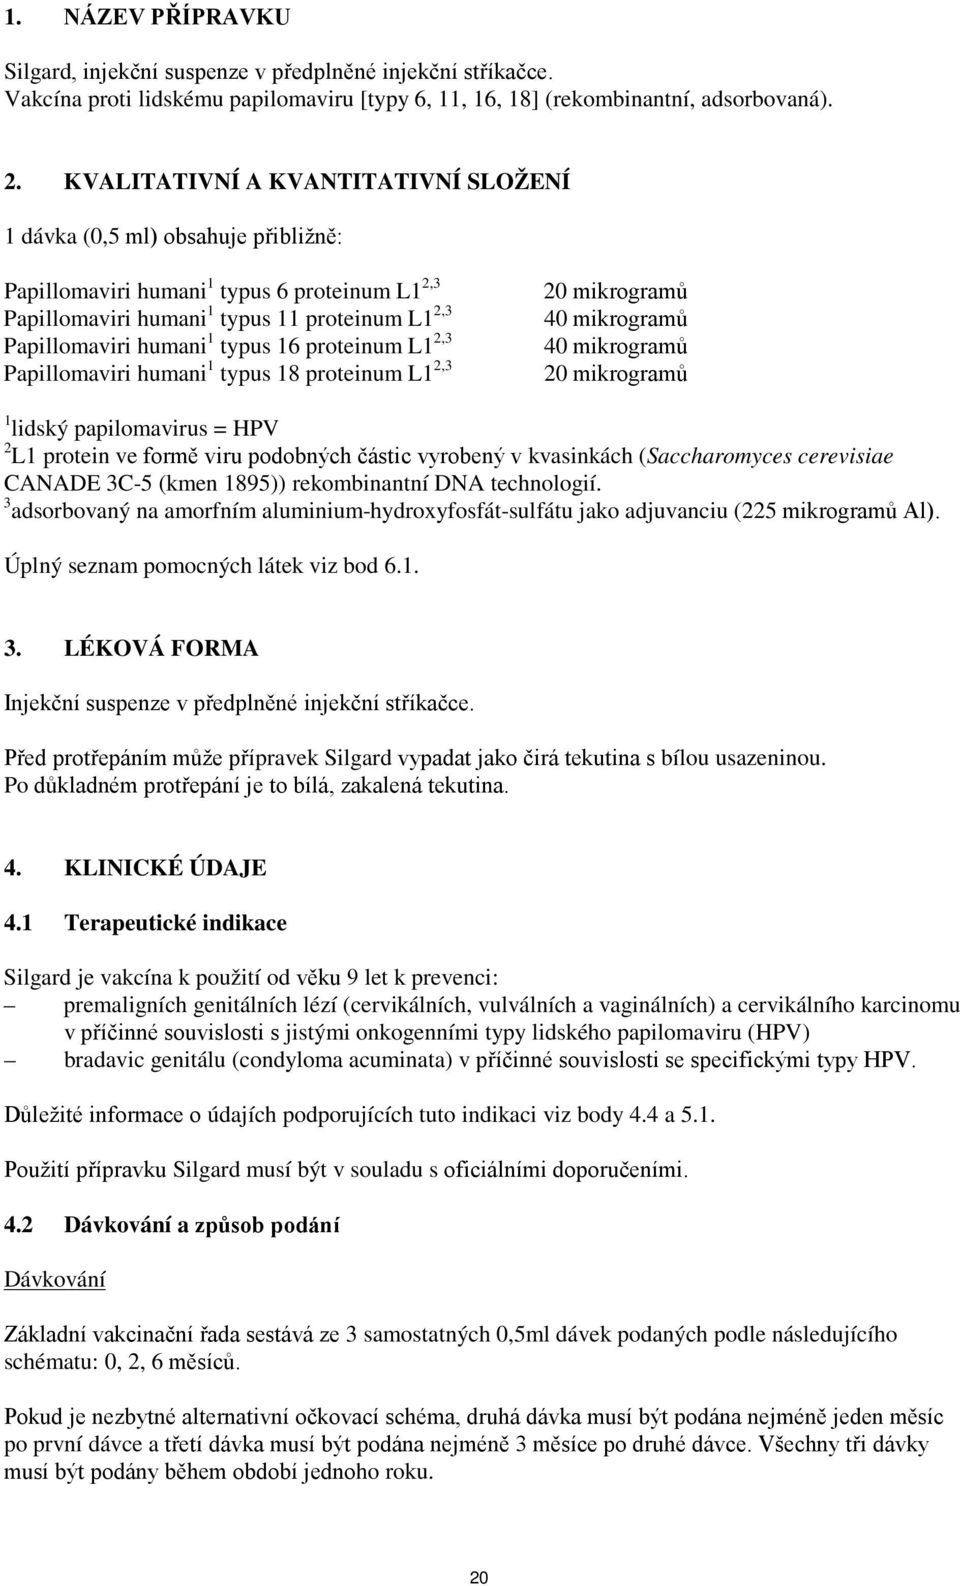 16 proteinum L1 2,3 Papillomaviri humani 1 typus 18 proteinum L1 2,3 20 mikrogramů 40 mikrogramů 40 mikrogramů 20 mikrogramů 1 lidský papilomavirus = HPV 2 L1 protein ve formě viru podobných částic